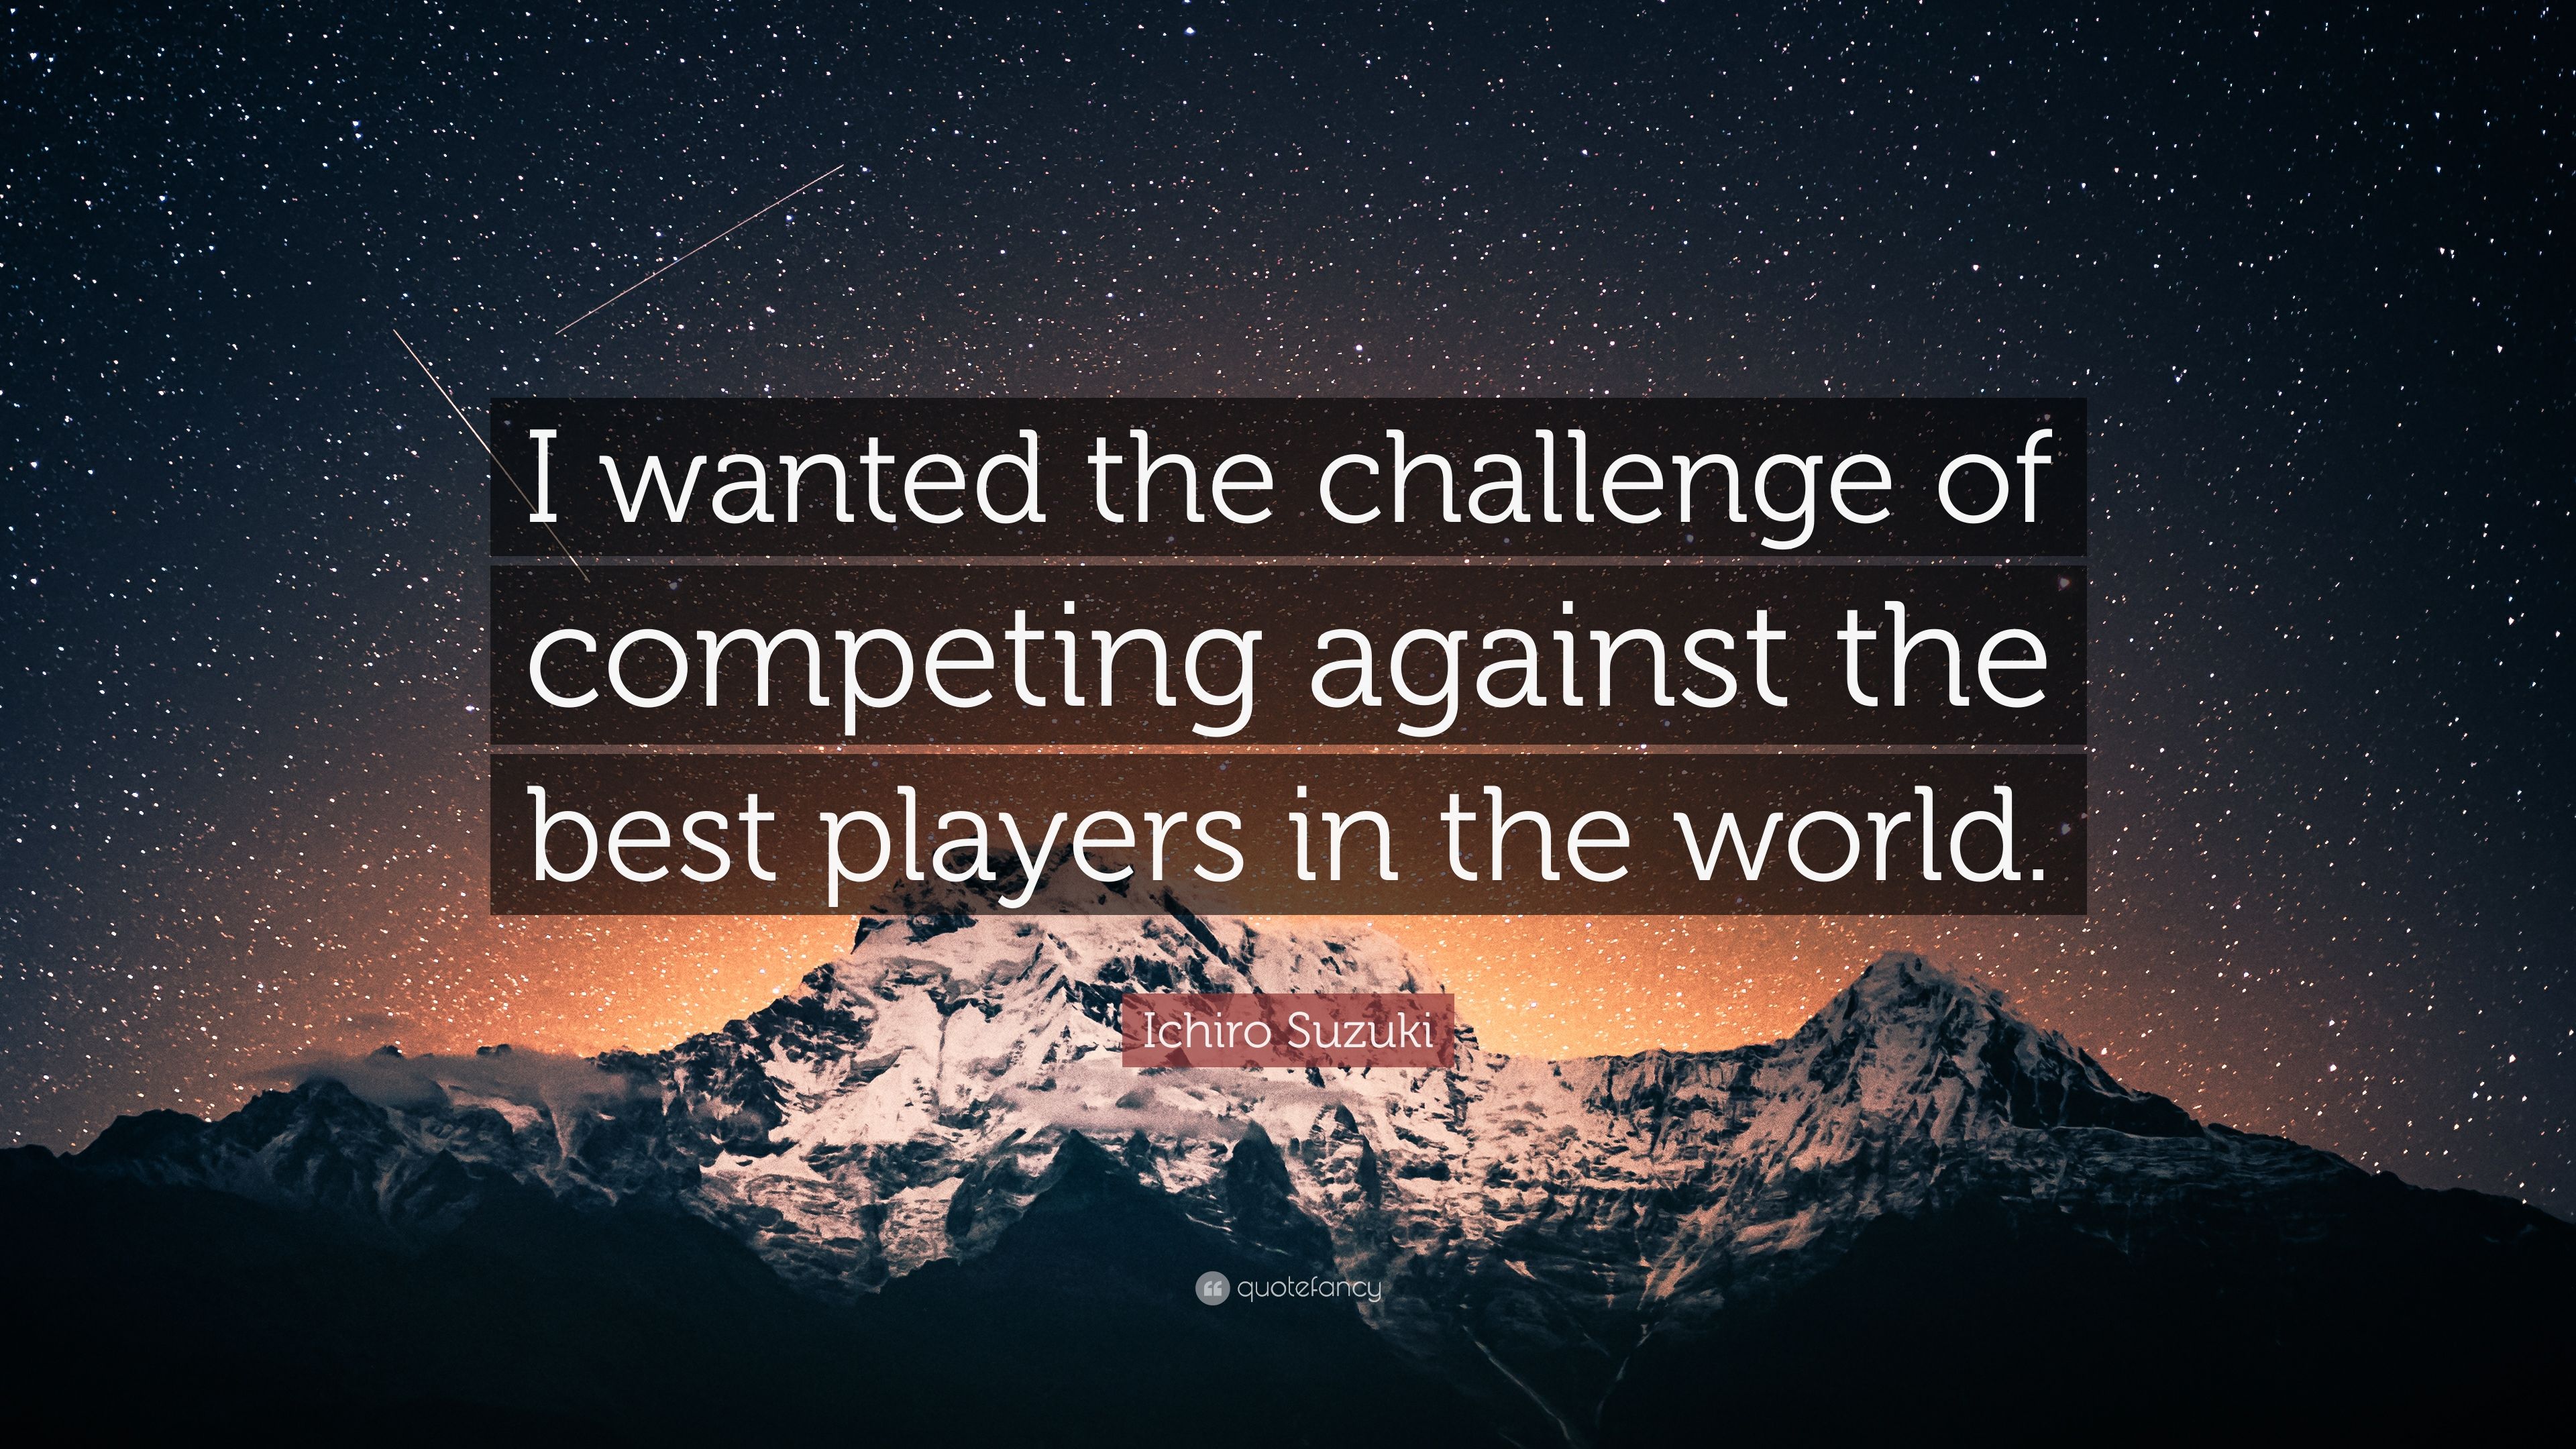 Ichiro Suzuki Quote: “I wanted the challenge of competing against